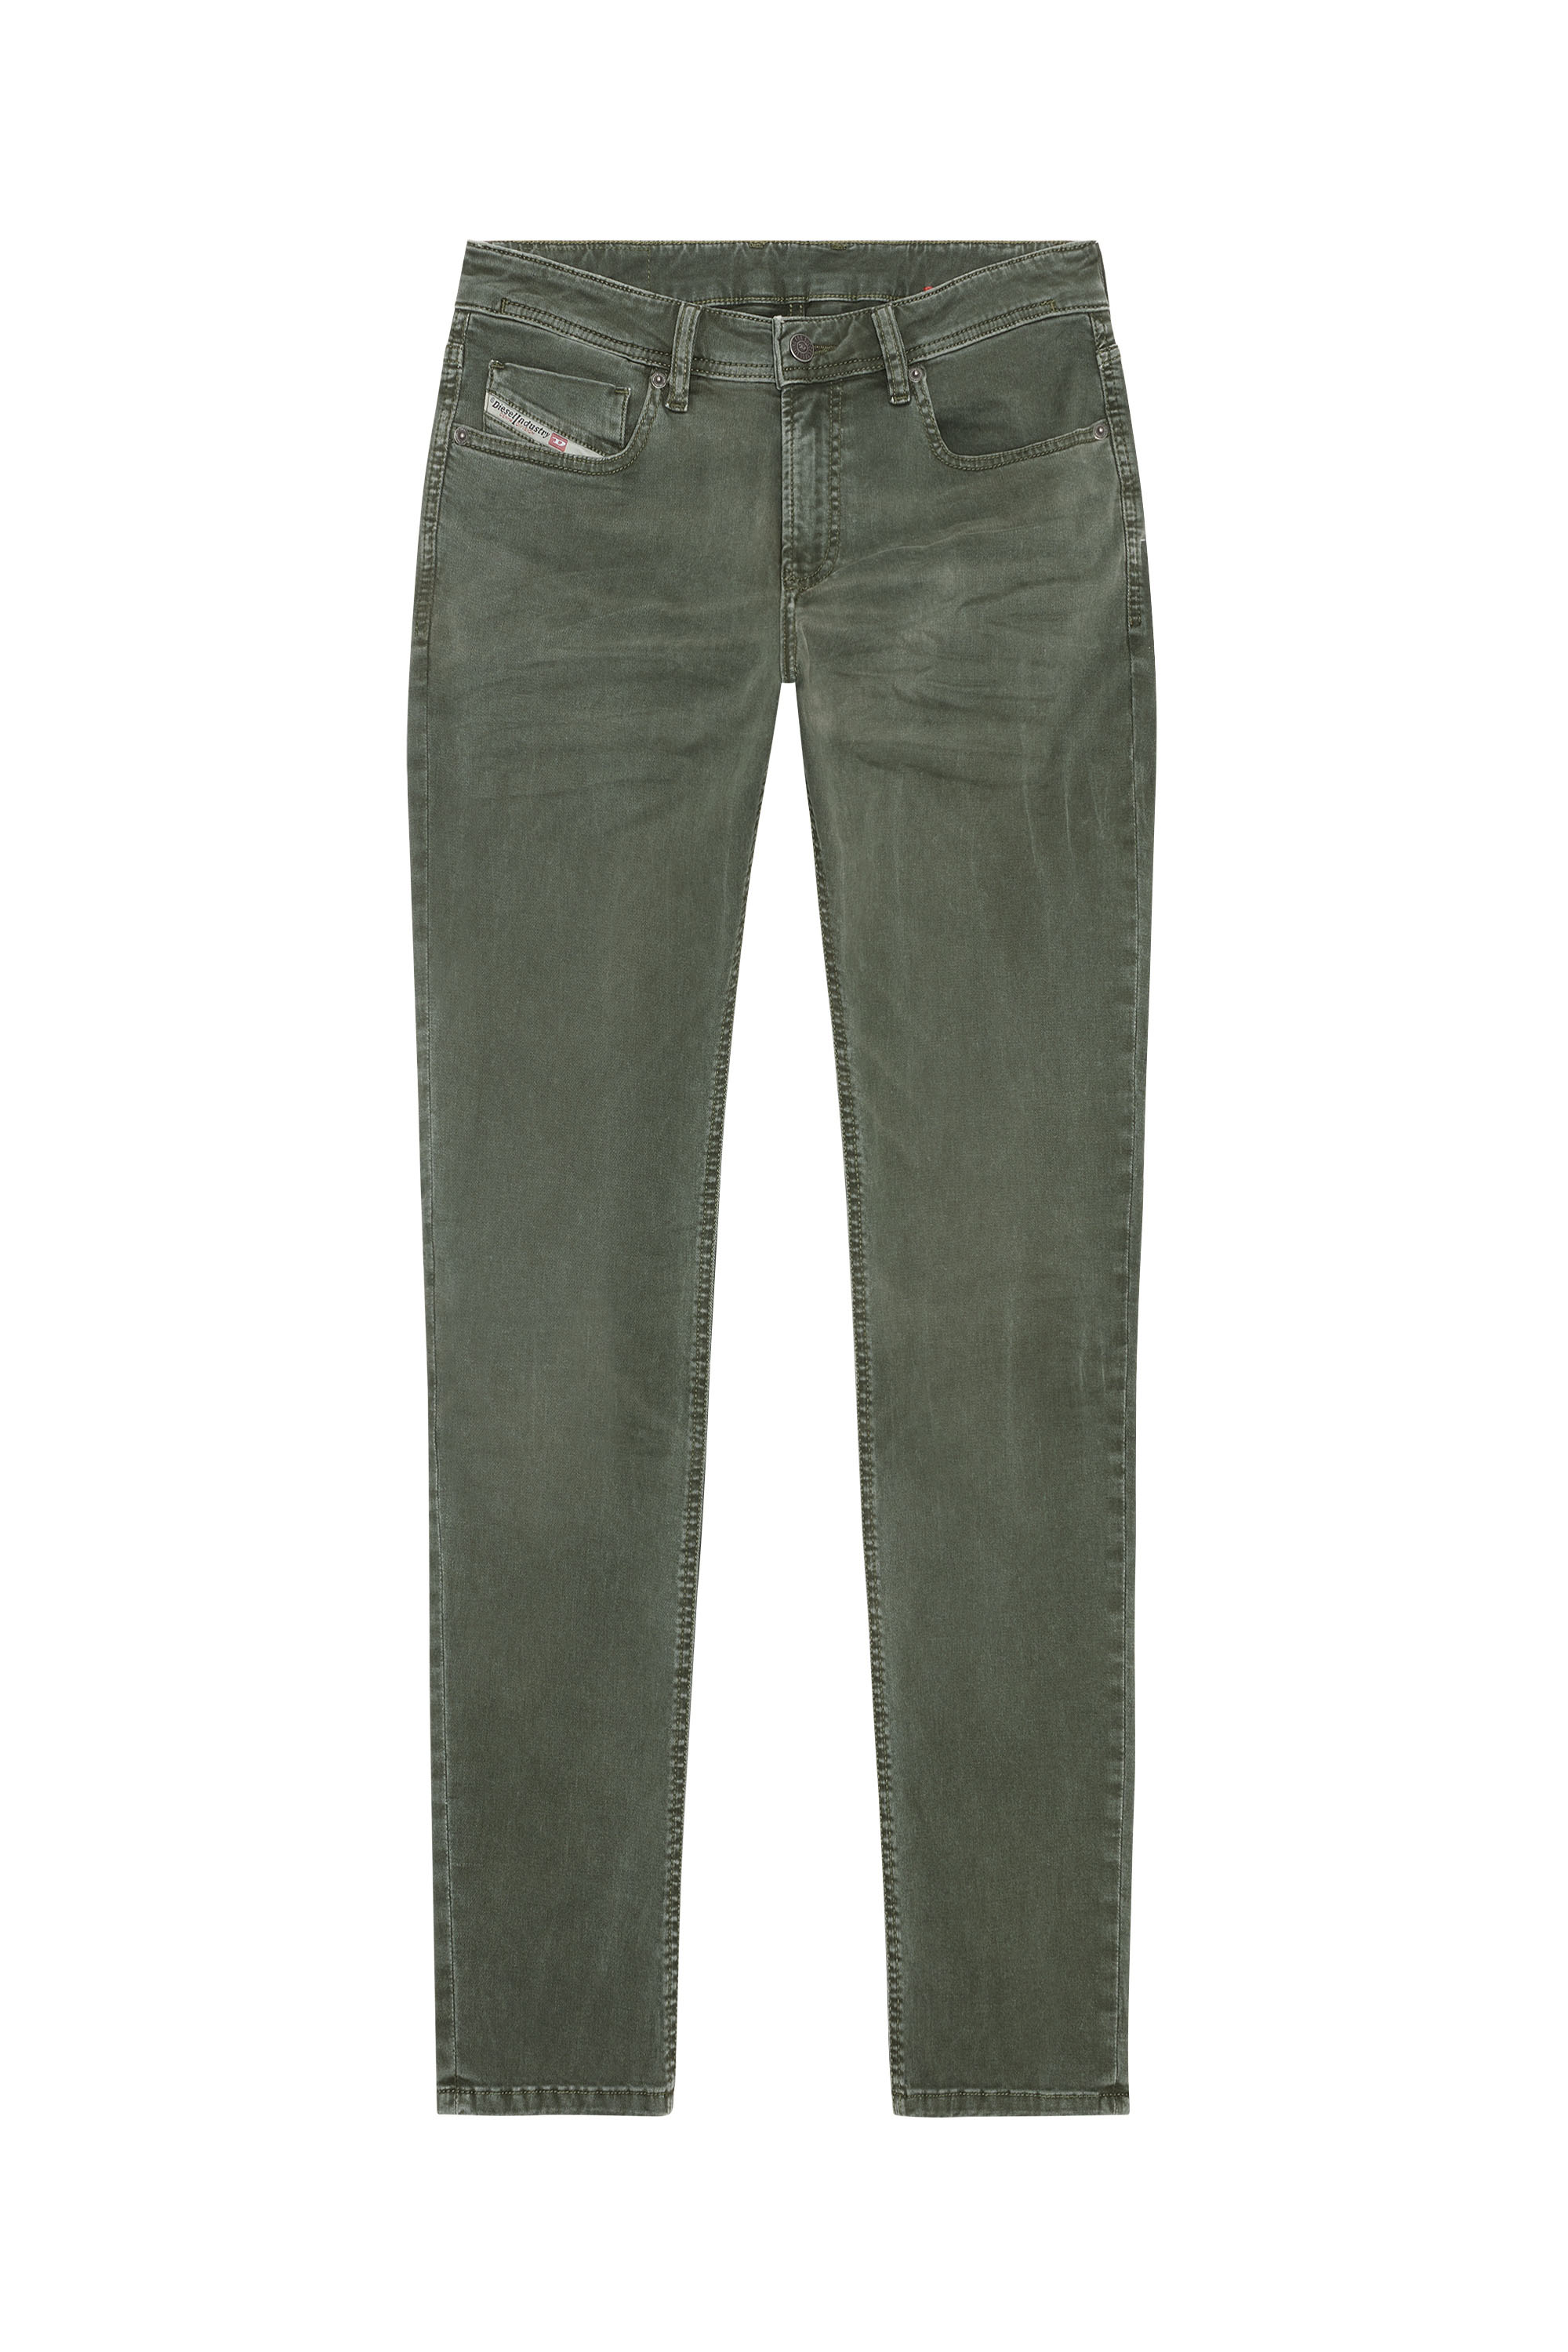 Diesel - Skinny Jeans 1979 Sleenker 0ENAK, 5FX - Image 3